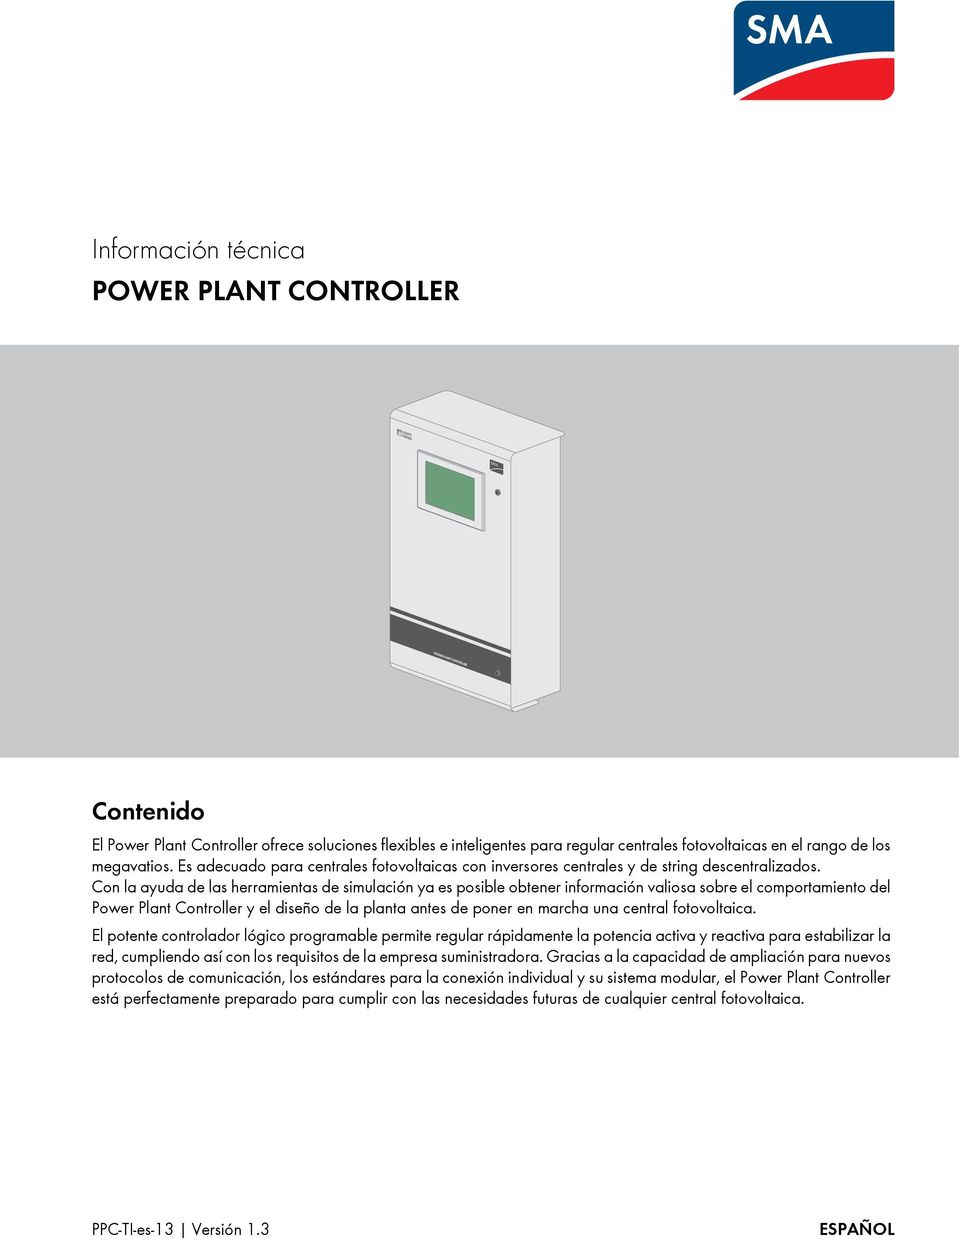 Con la ayuda de las herramientas de simulación ya es posible obtener información valiosa sobre el comportamiento del Power Plant Controller y el diseño de la planta antes de poner en marcha una